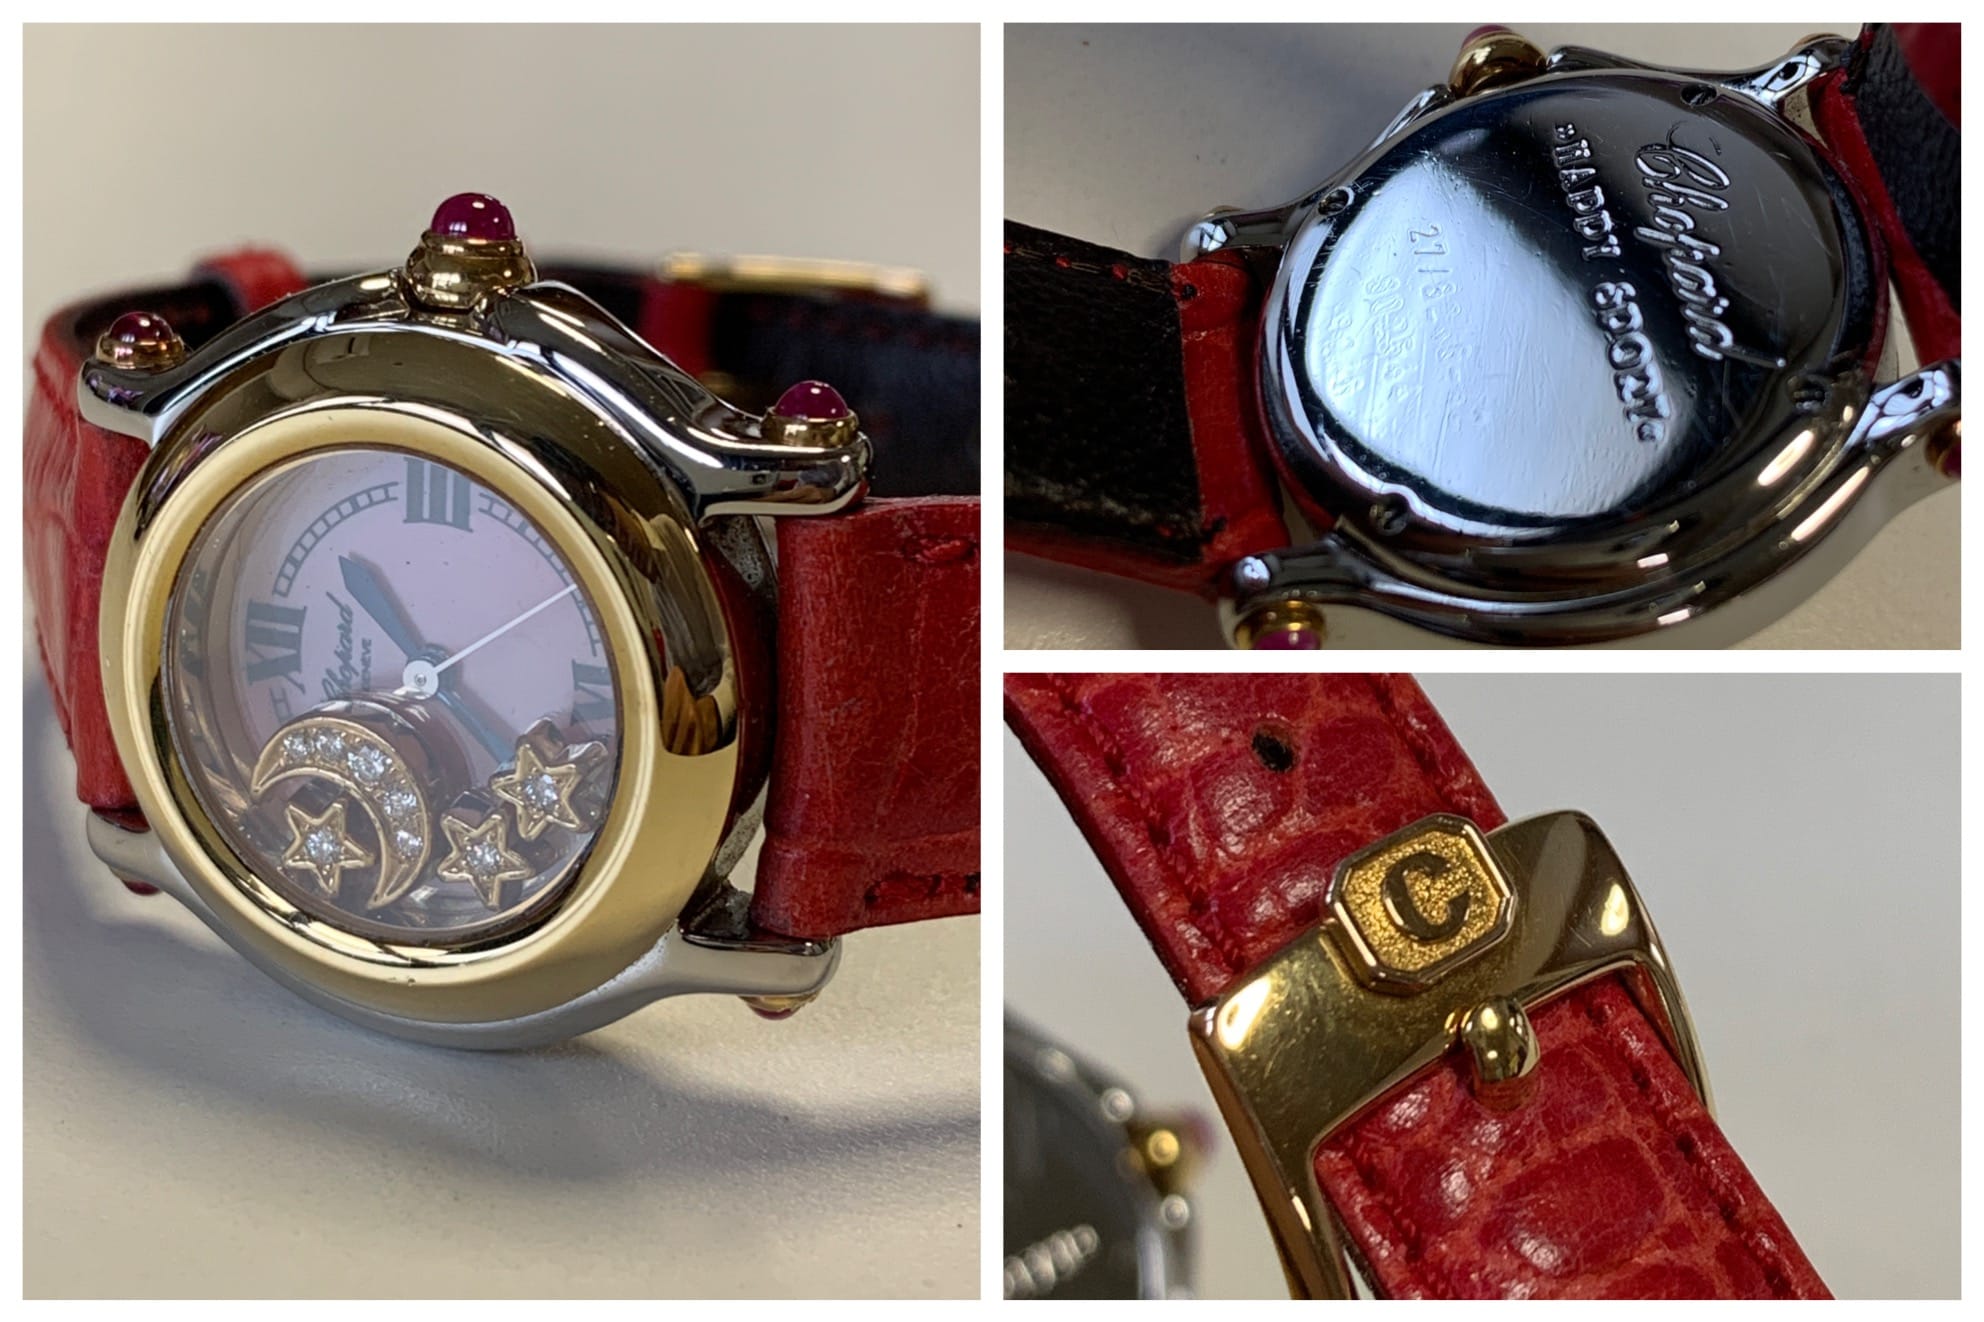 腕時計｢ショパール ハッピースポーツ レディース｣買取りました | 富山で時計･ブランド･指輪の買取･質預けなら、質フタバ。